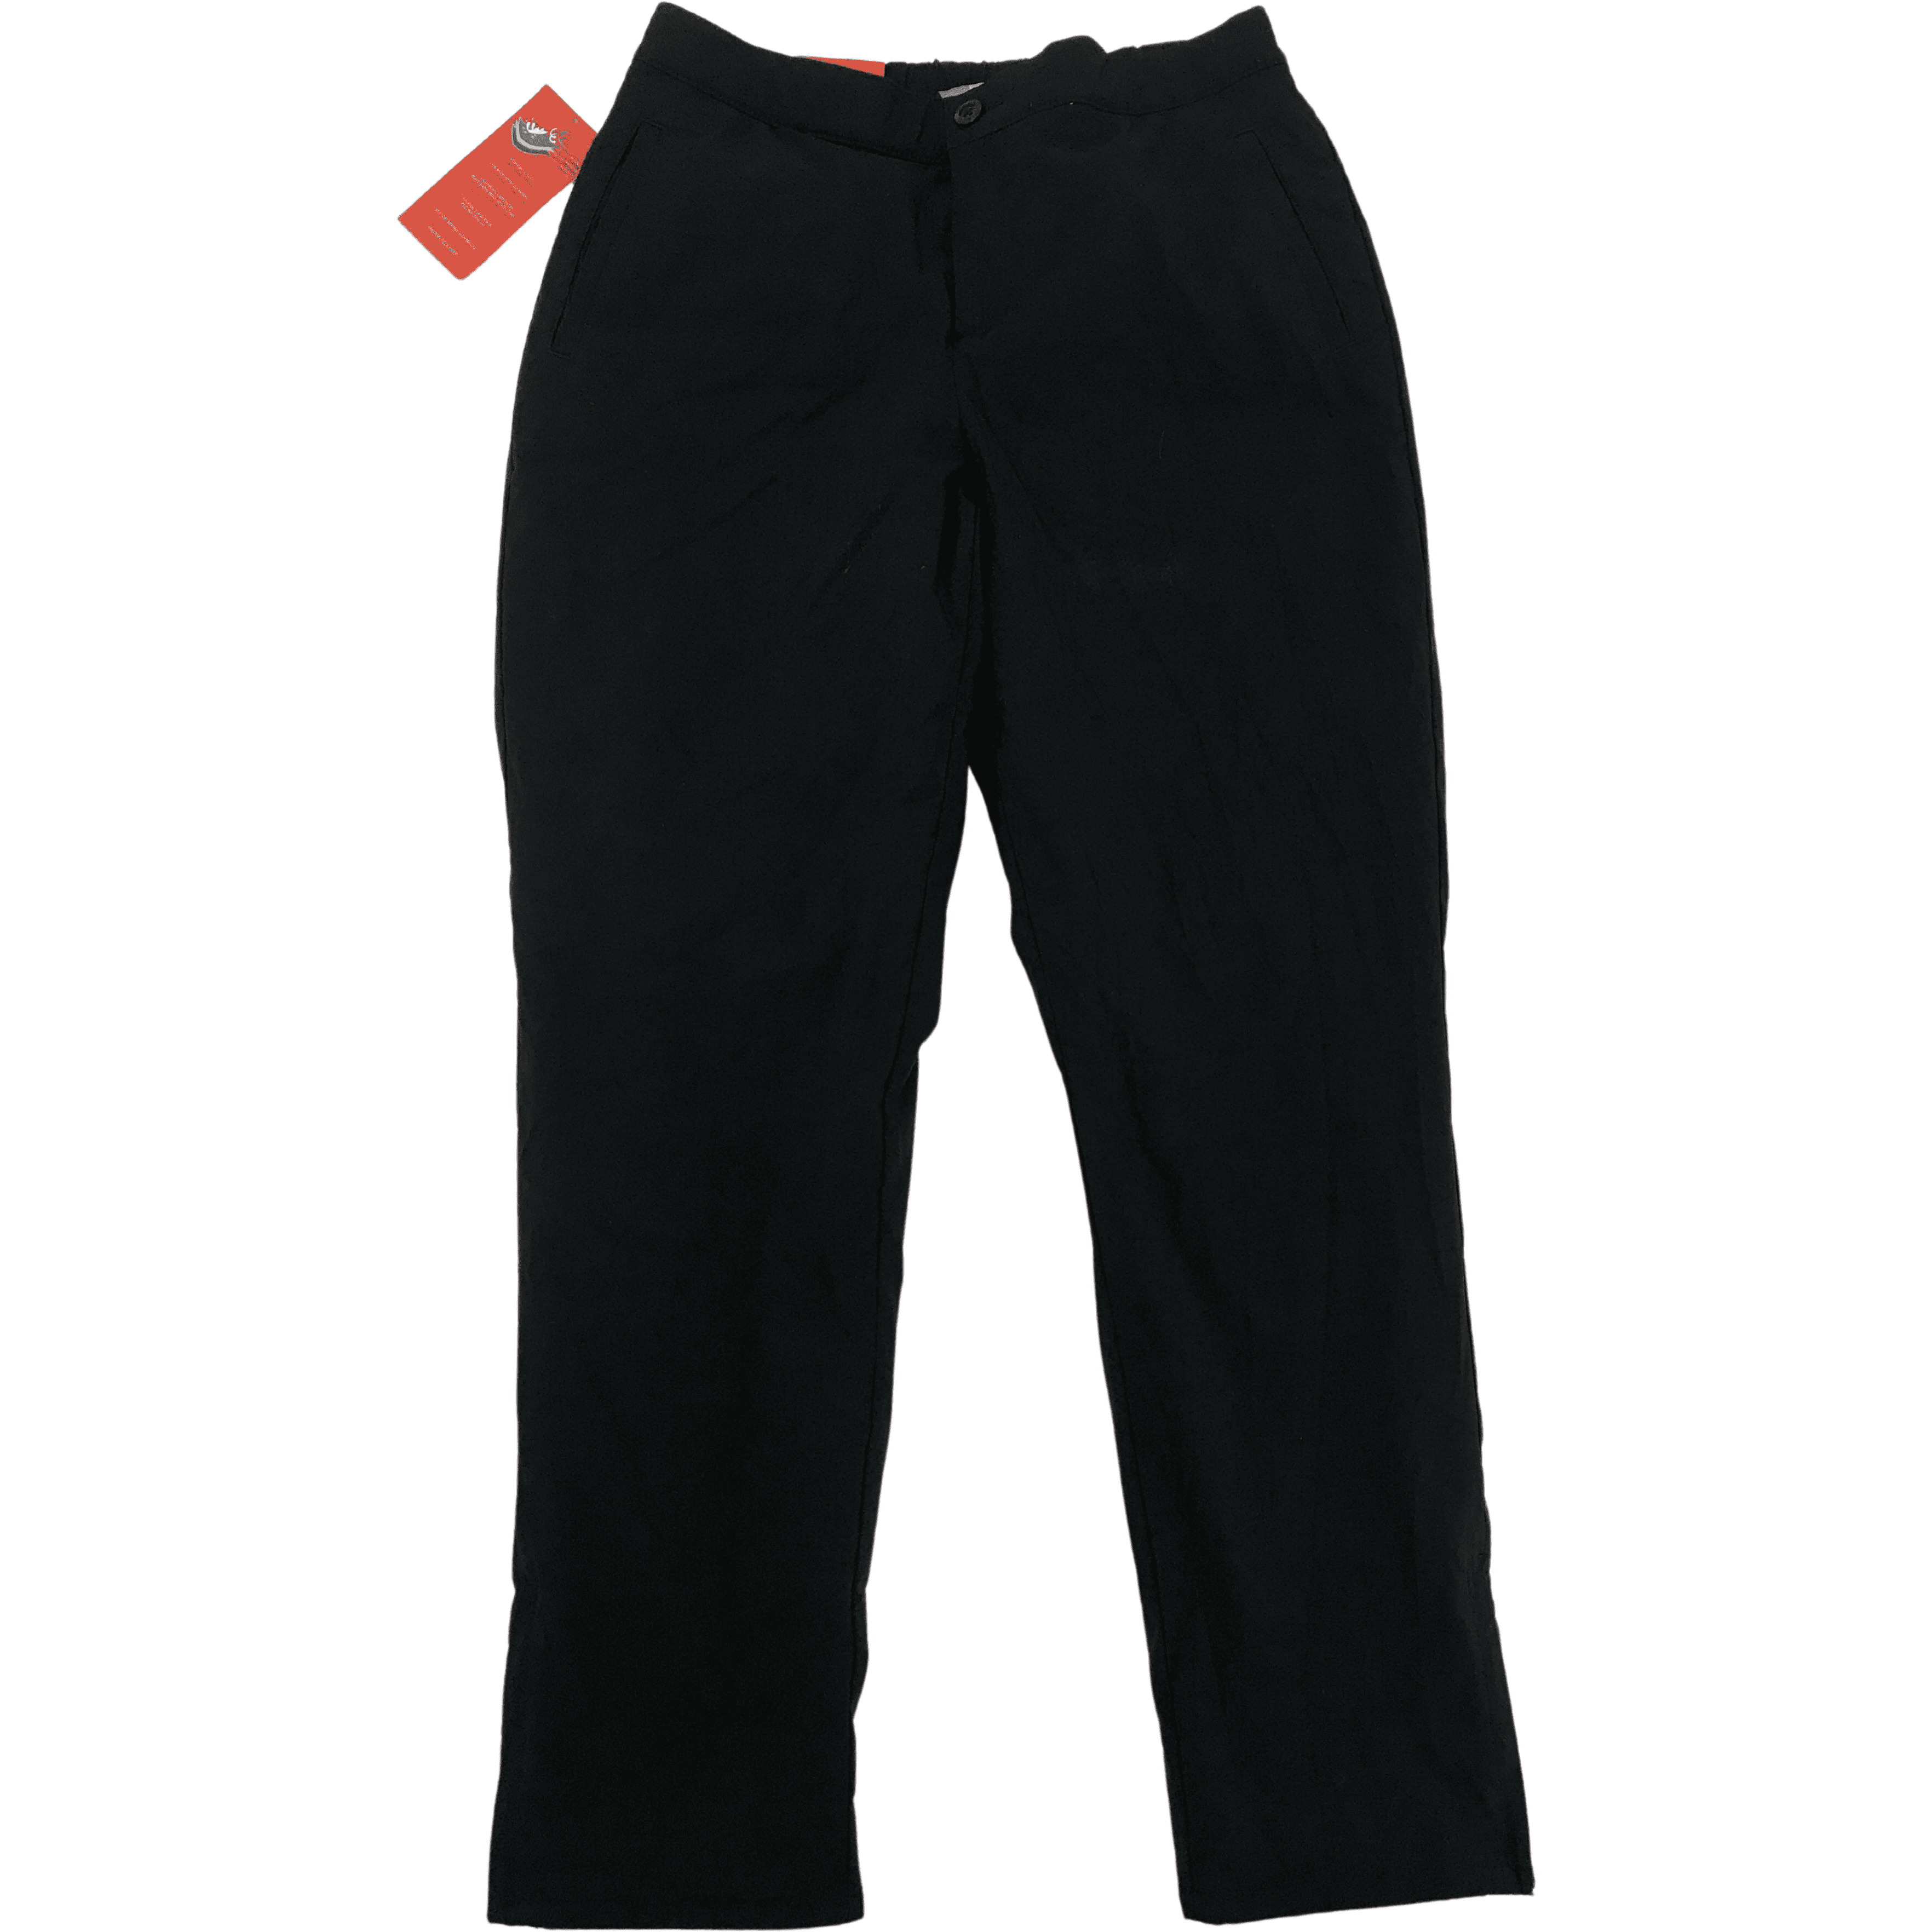 Stormpack Women's Lined Pants / Waterproof / Black / Windproof / Various Sizes